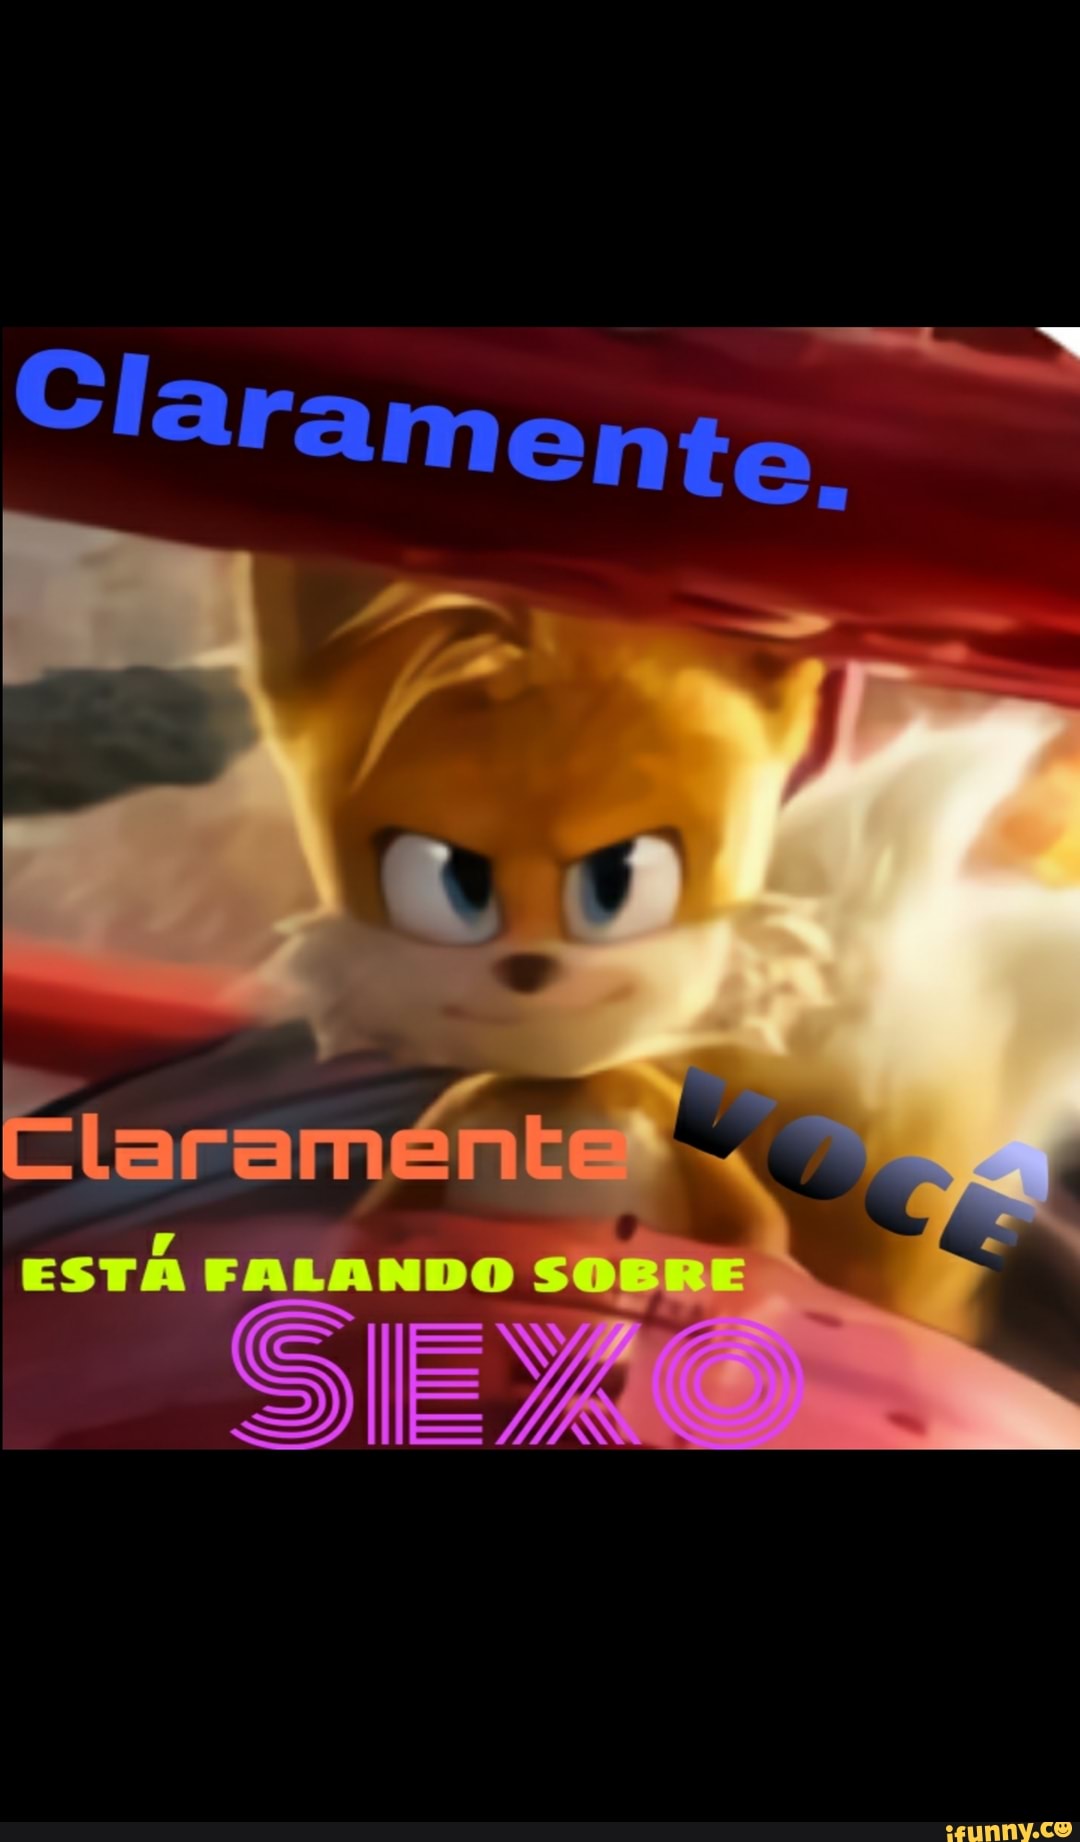 Memes da Vida (Omemesdavidaofc Agora eu quero um filme do Sonic feio odiar  a primeira amar o Sonic feio versão do Sonic em Tico Teco Ememesdavida.ofe  - iFunny Brazil